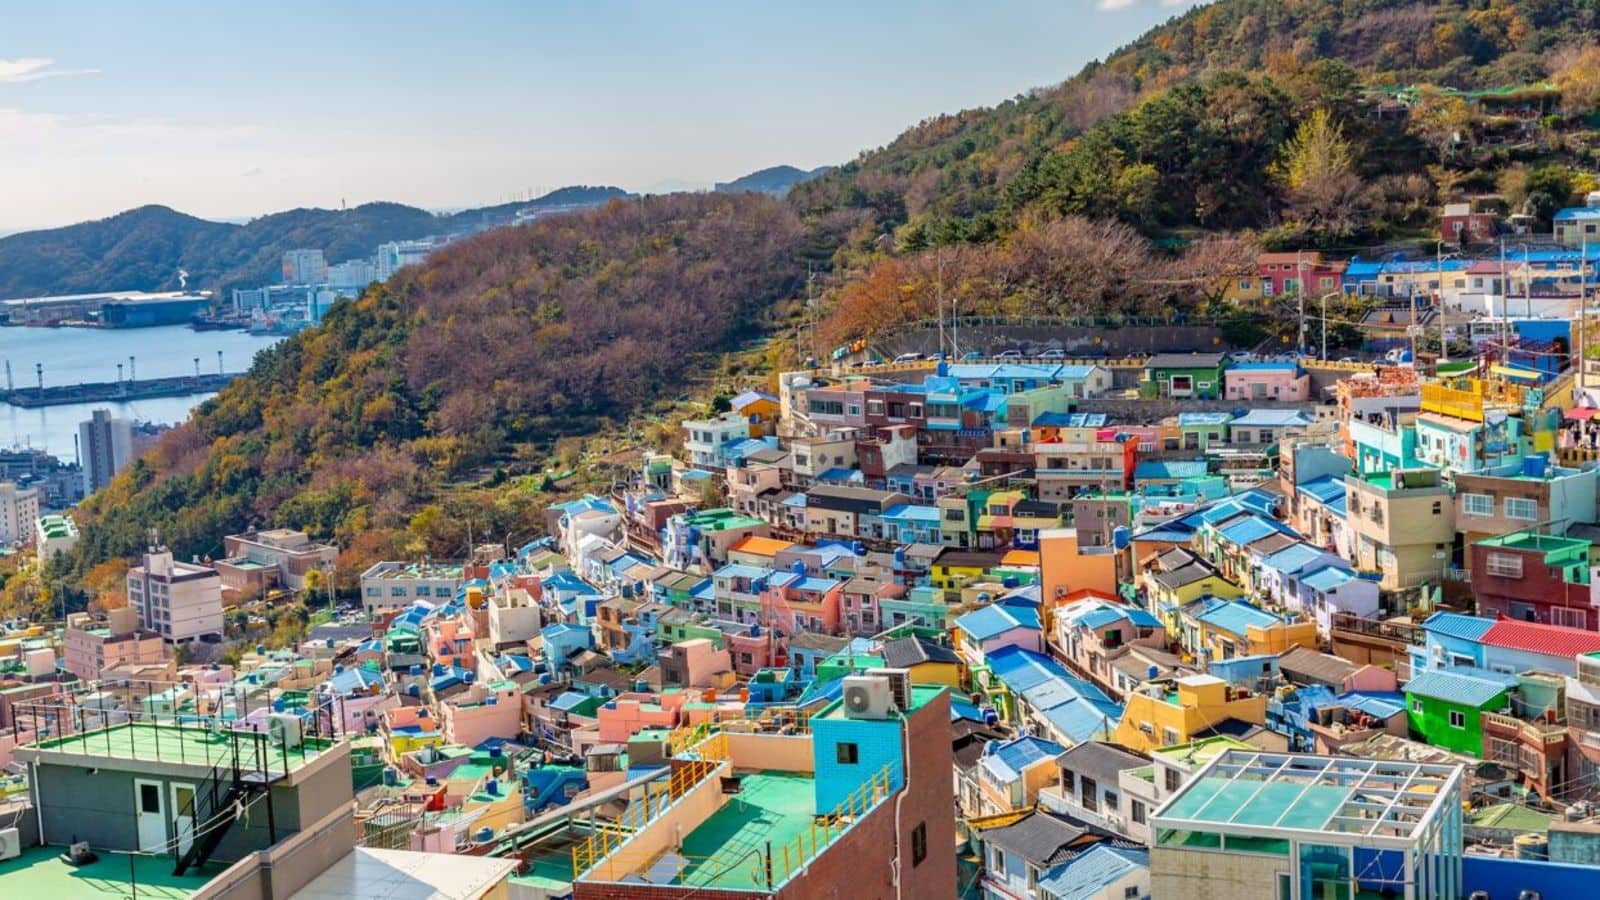 Busan, South Korea: A city of coastal charm